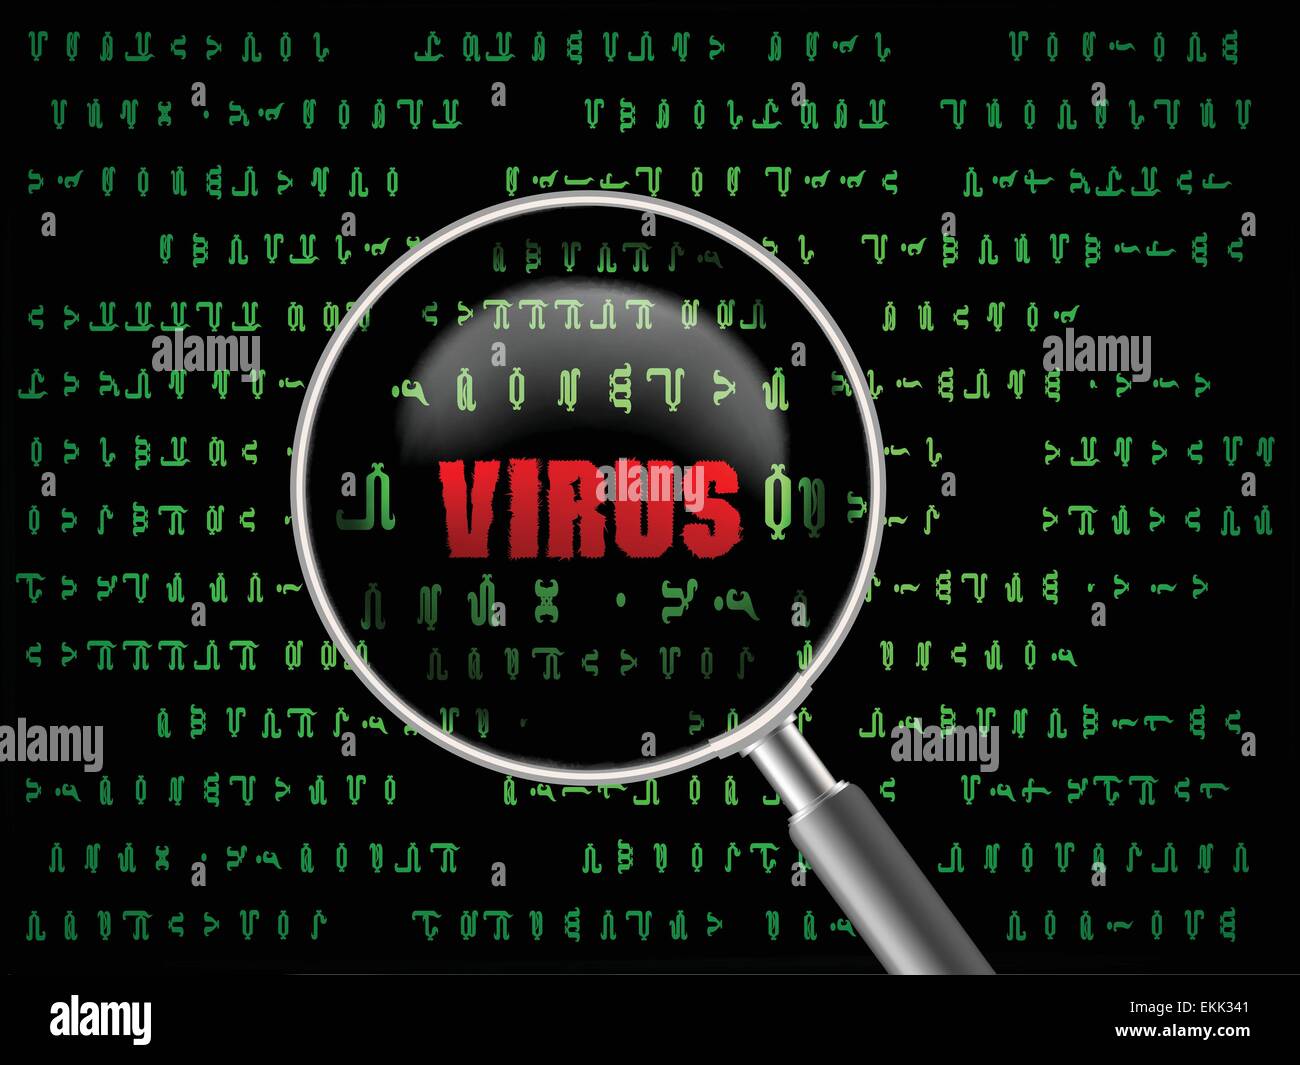 Find viruses. Компьютерный вирус Спутник. Вирусы компаньоны. Компьютерный вирус вектор. Японские компьютерные вирусы.